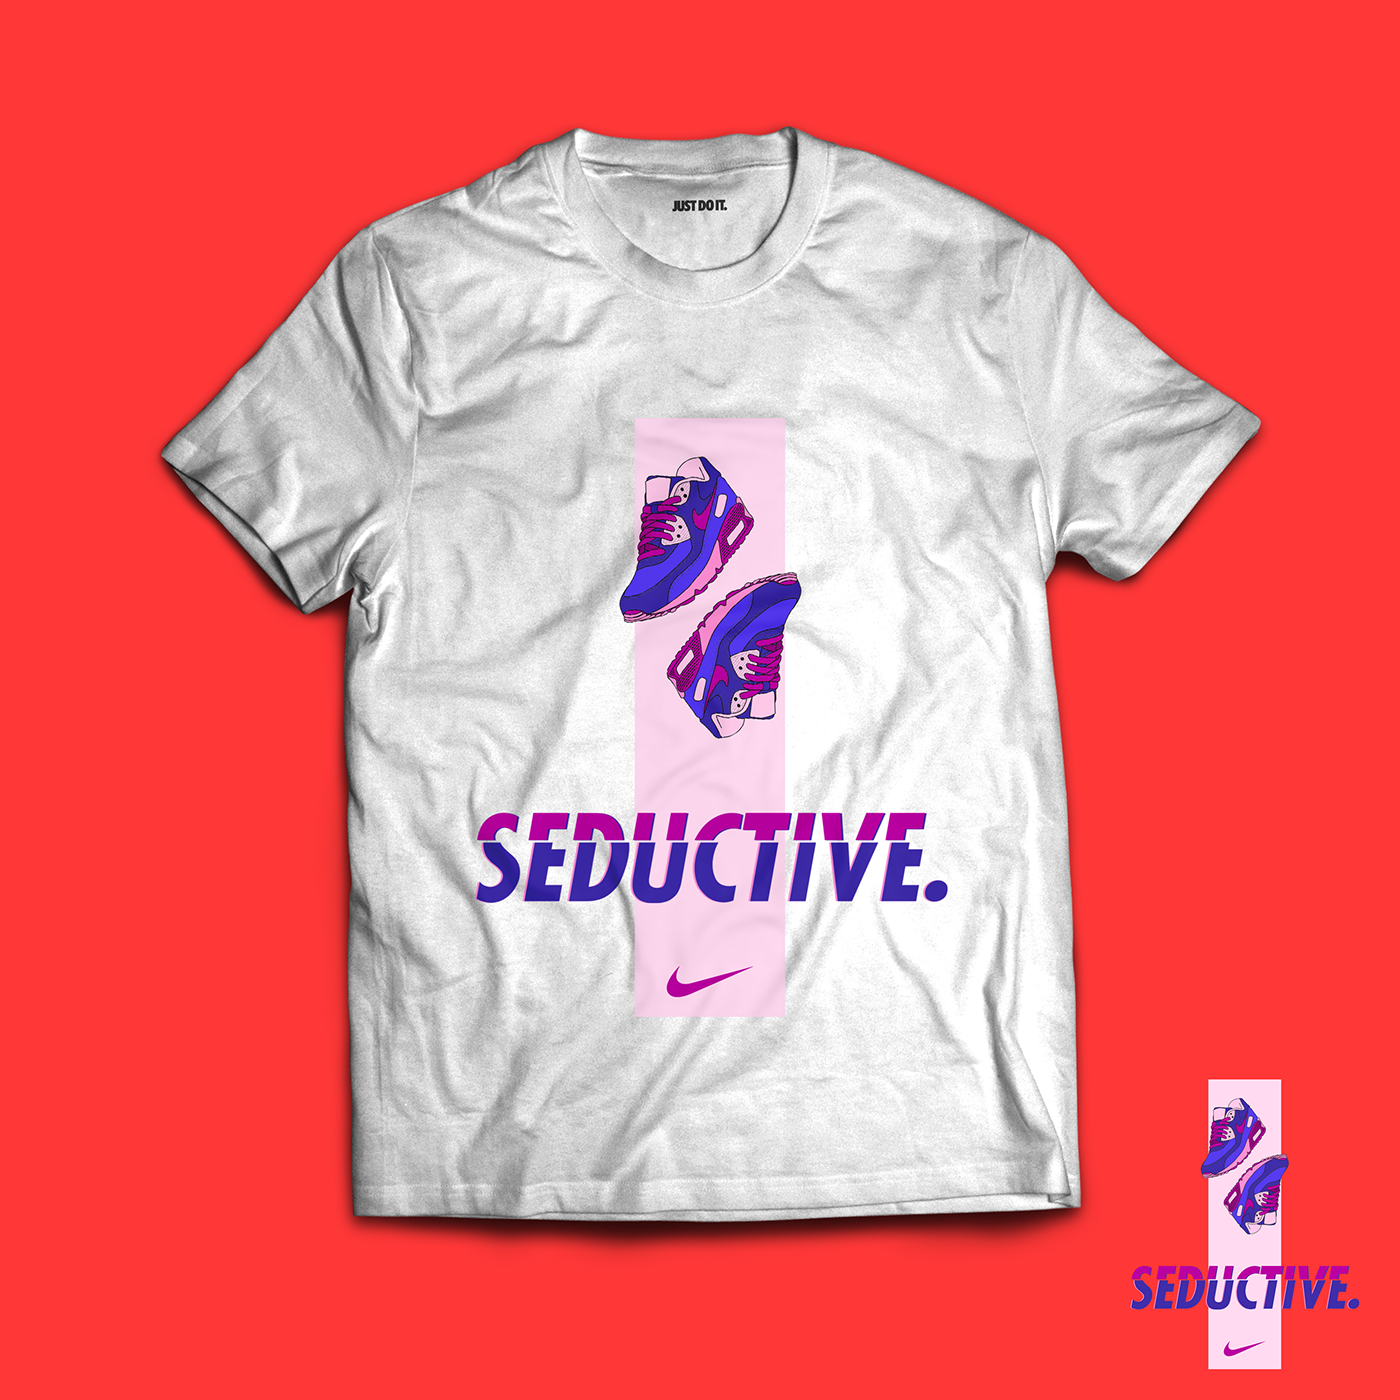 Nike tshirt design just do it seductive Tshirt Design Nike Tshirt